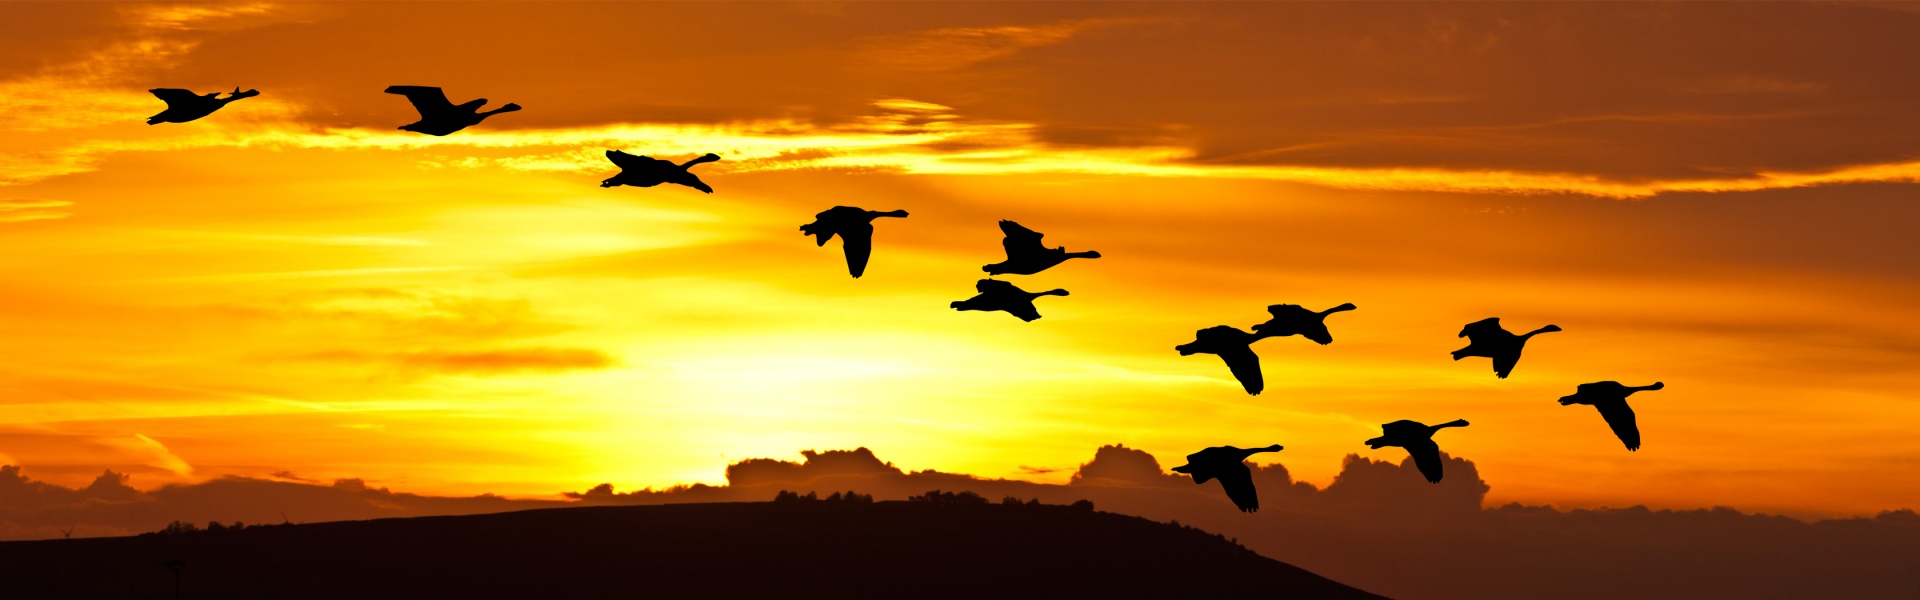 Sunrise Birds In Flight